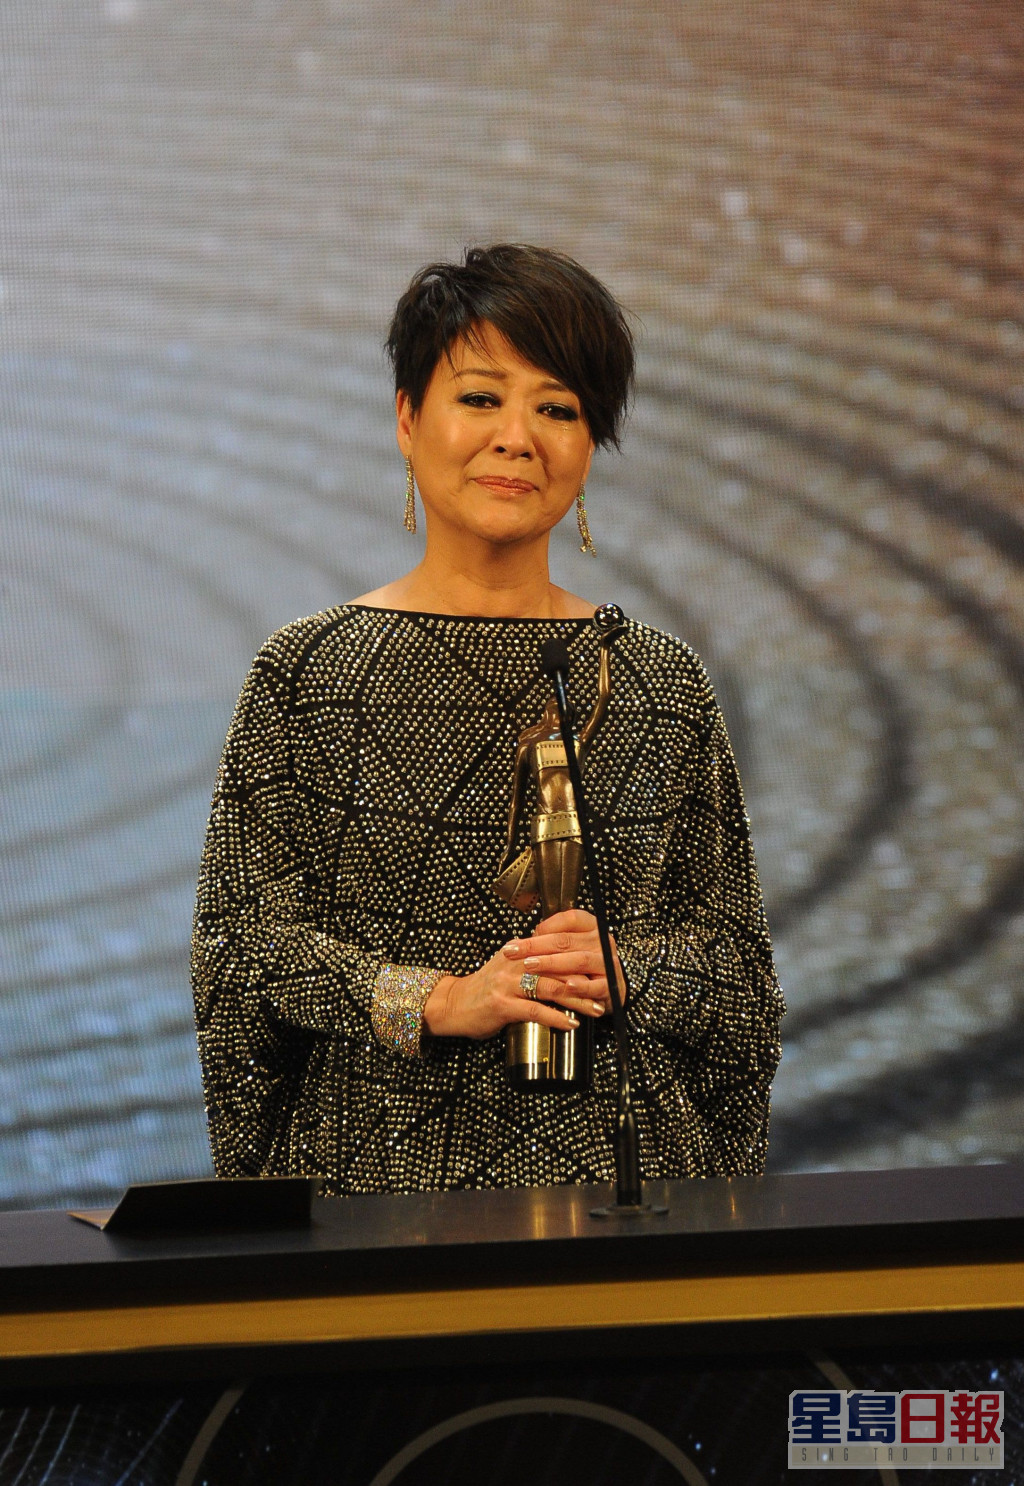 金燕玲多度夺得香港电影金像奖及台湾金马奖的「最佳女配角」奖项。